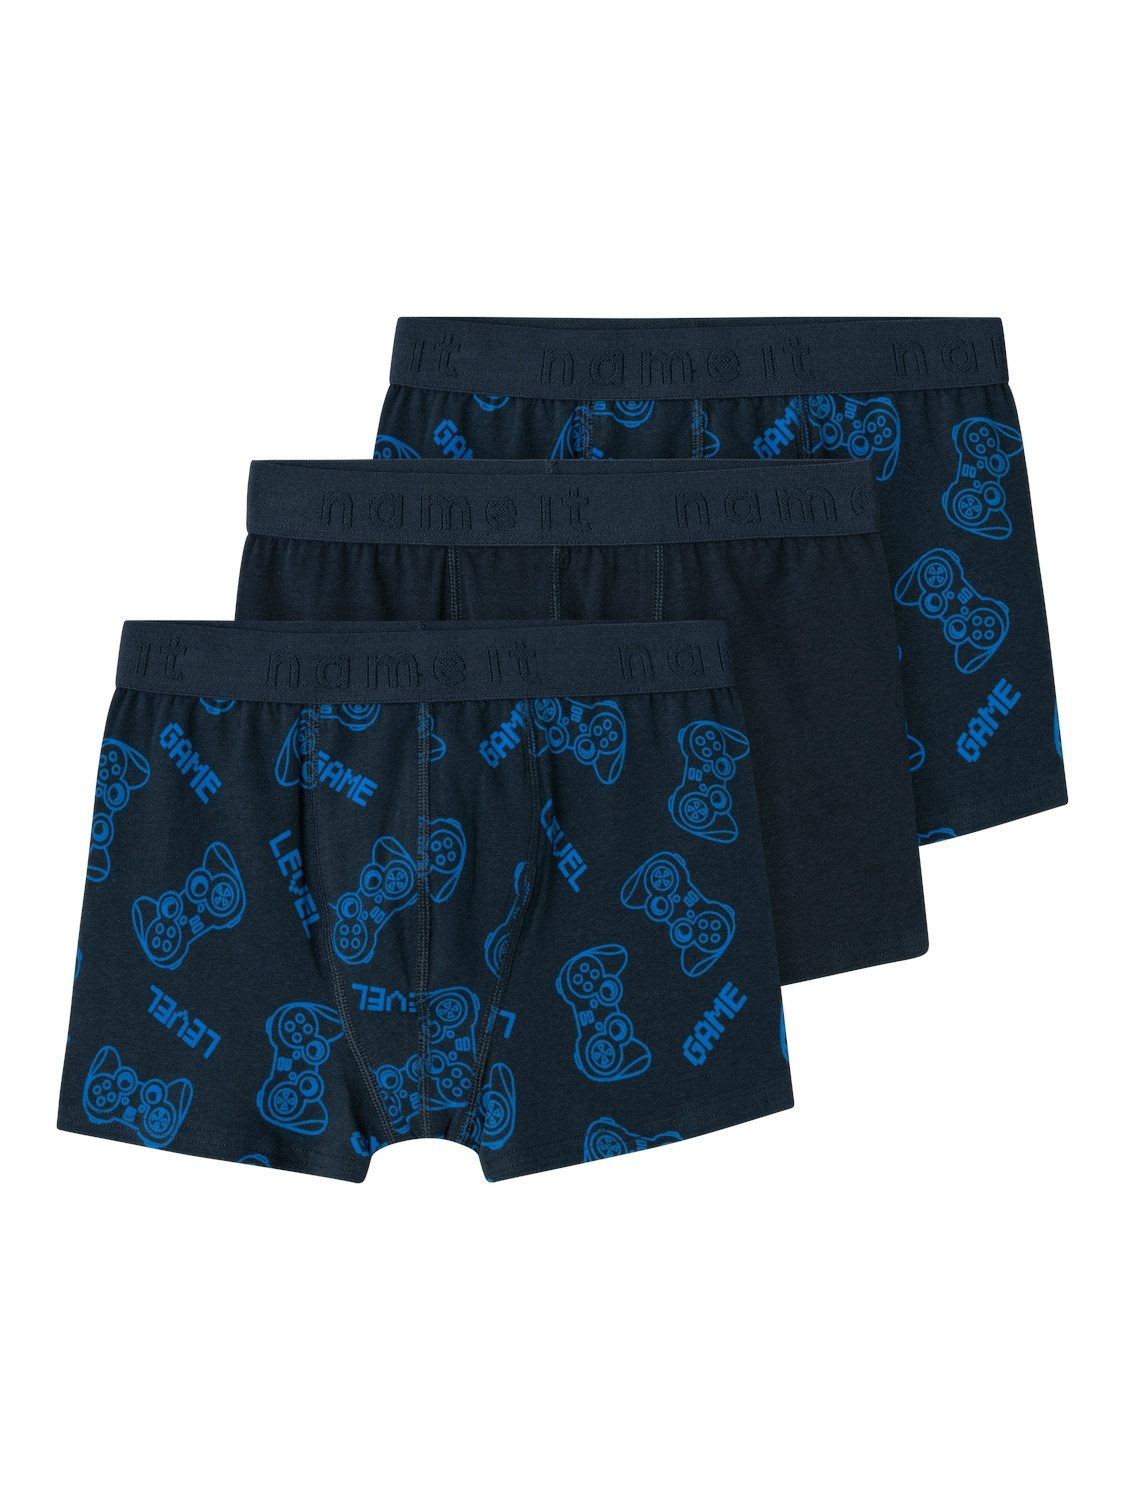 Name it KIDS boxershort set van 3 donkerblauw Jongens Stretchkatoen All over print 122 128